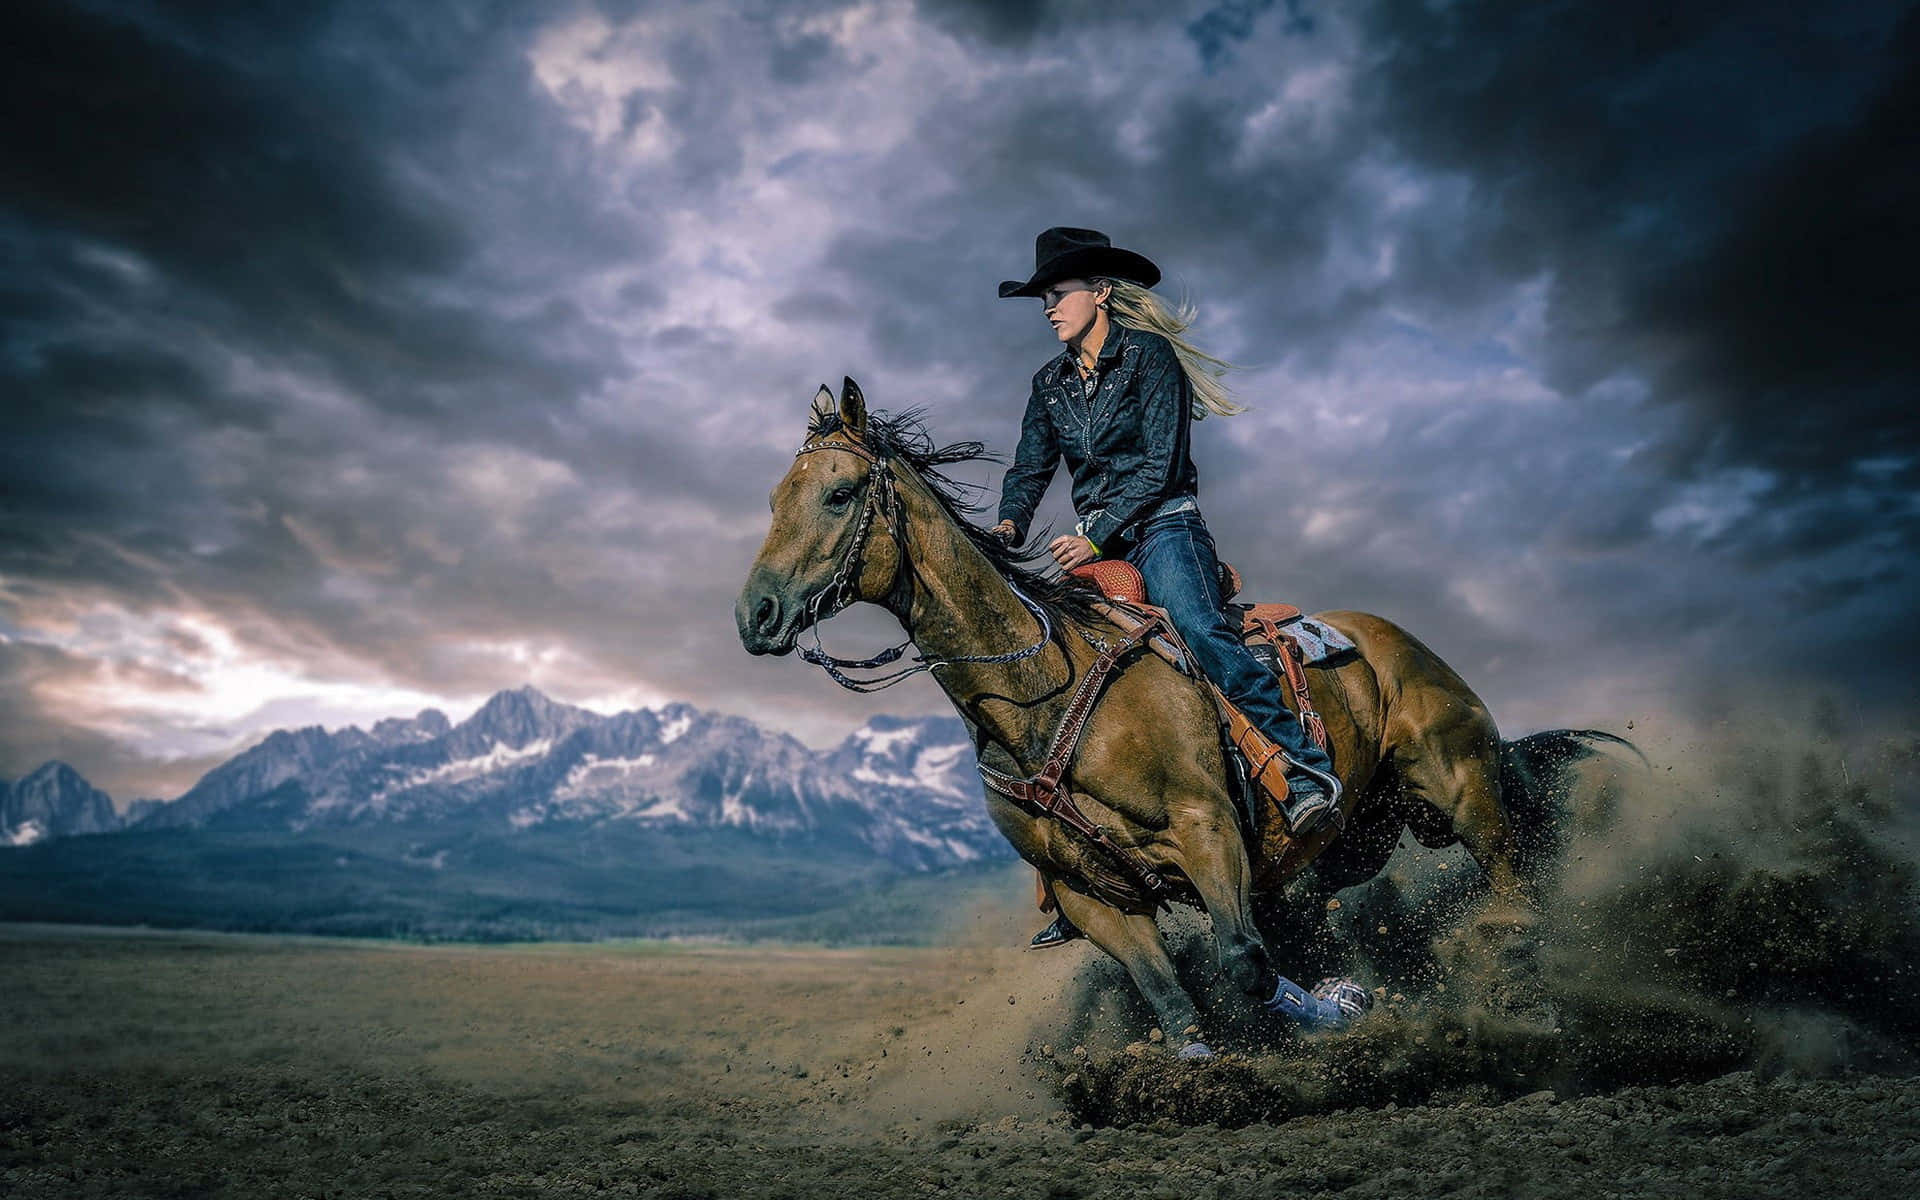 Einecowgirl Reitet Ein Pferd In Der Wüste.